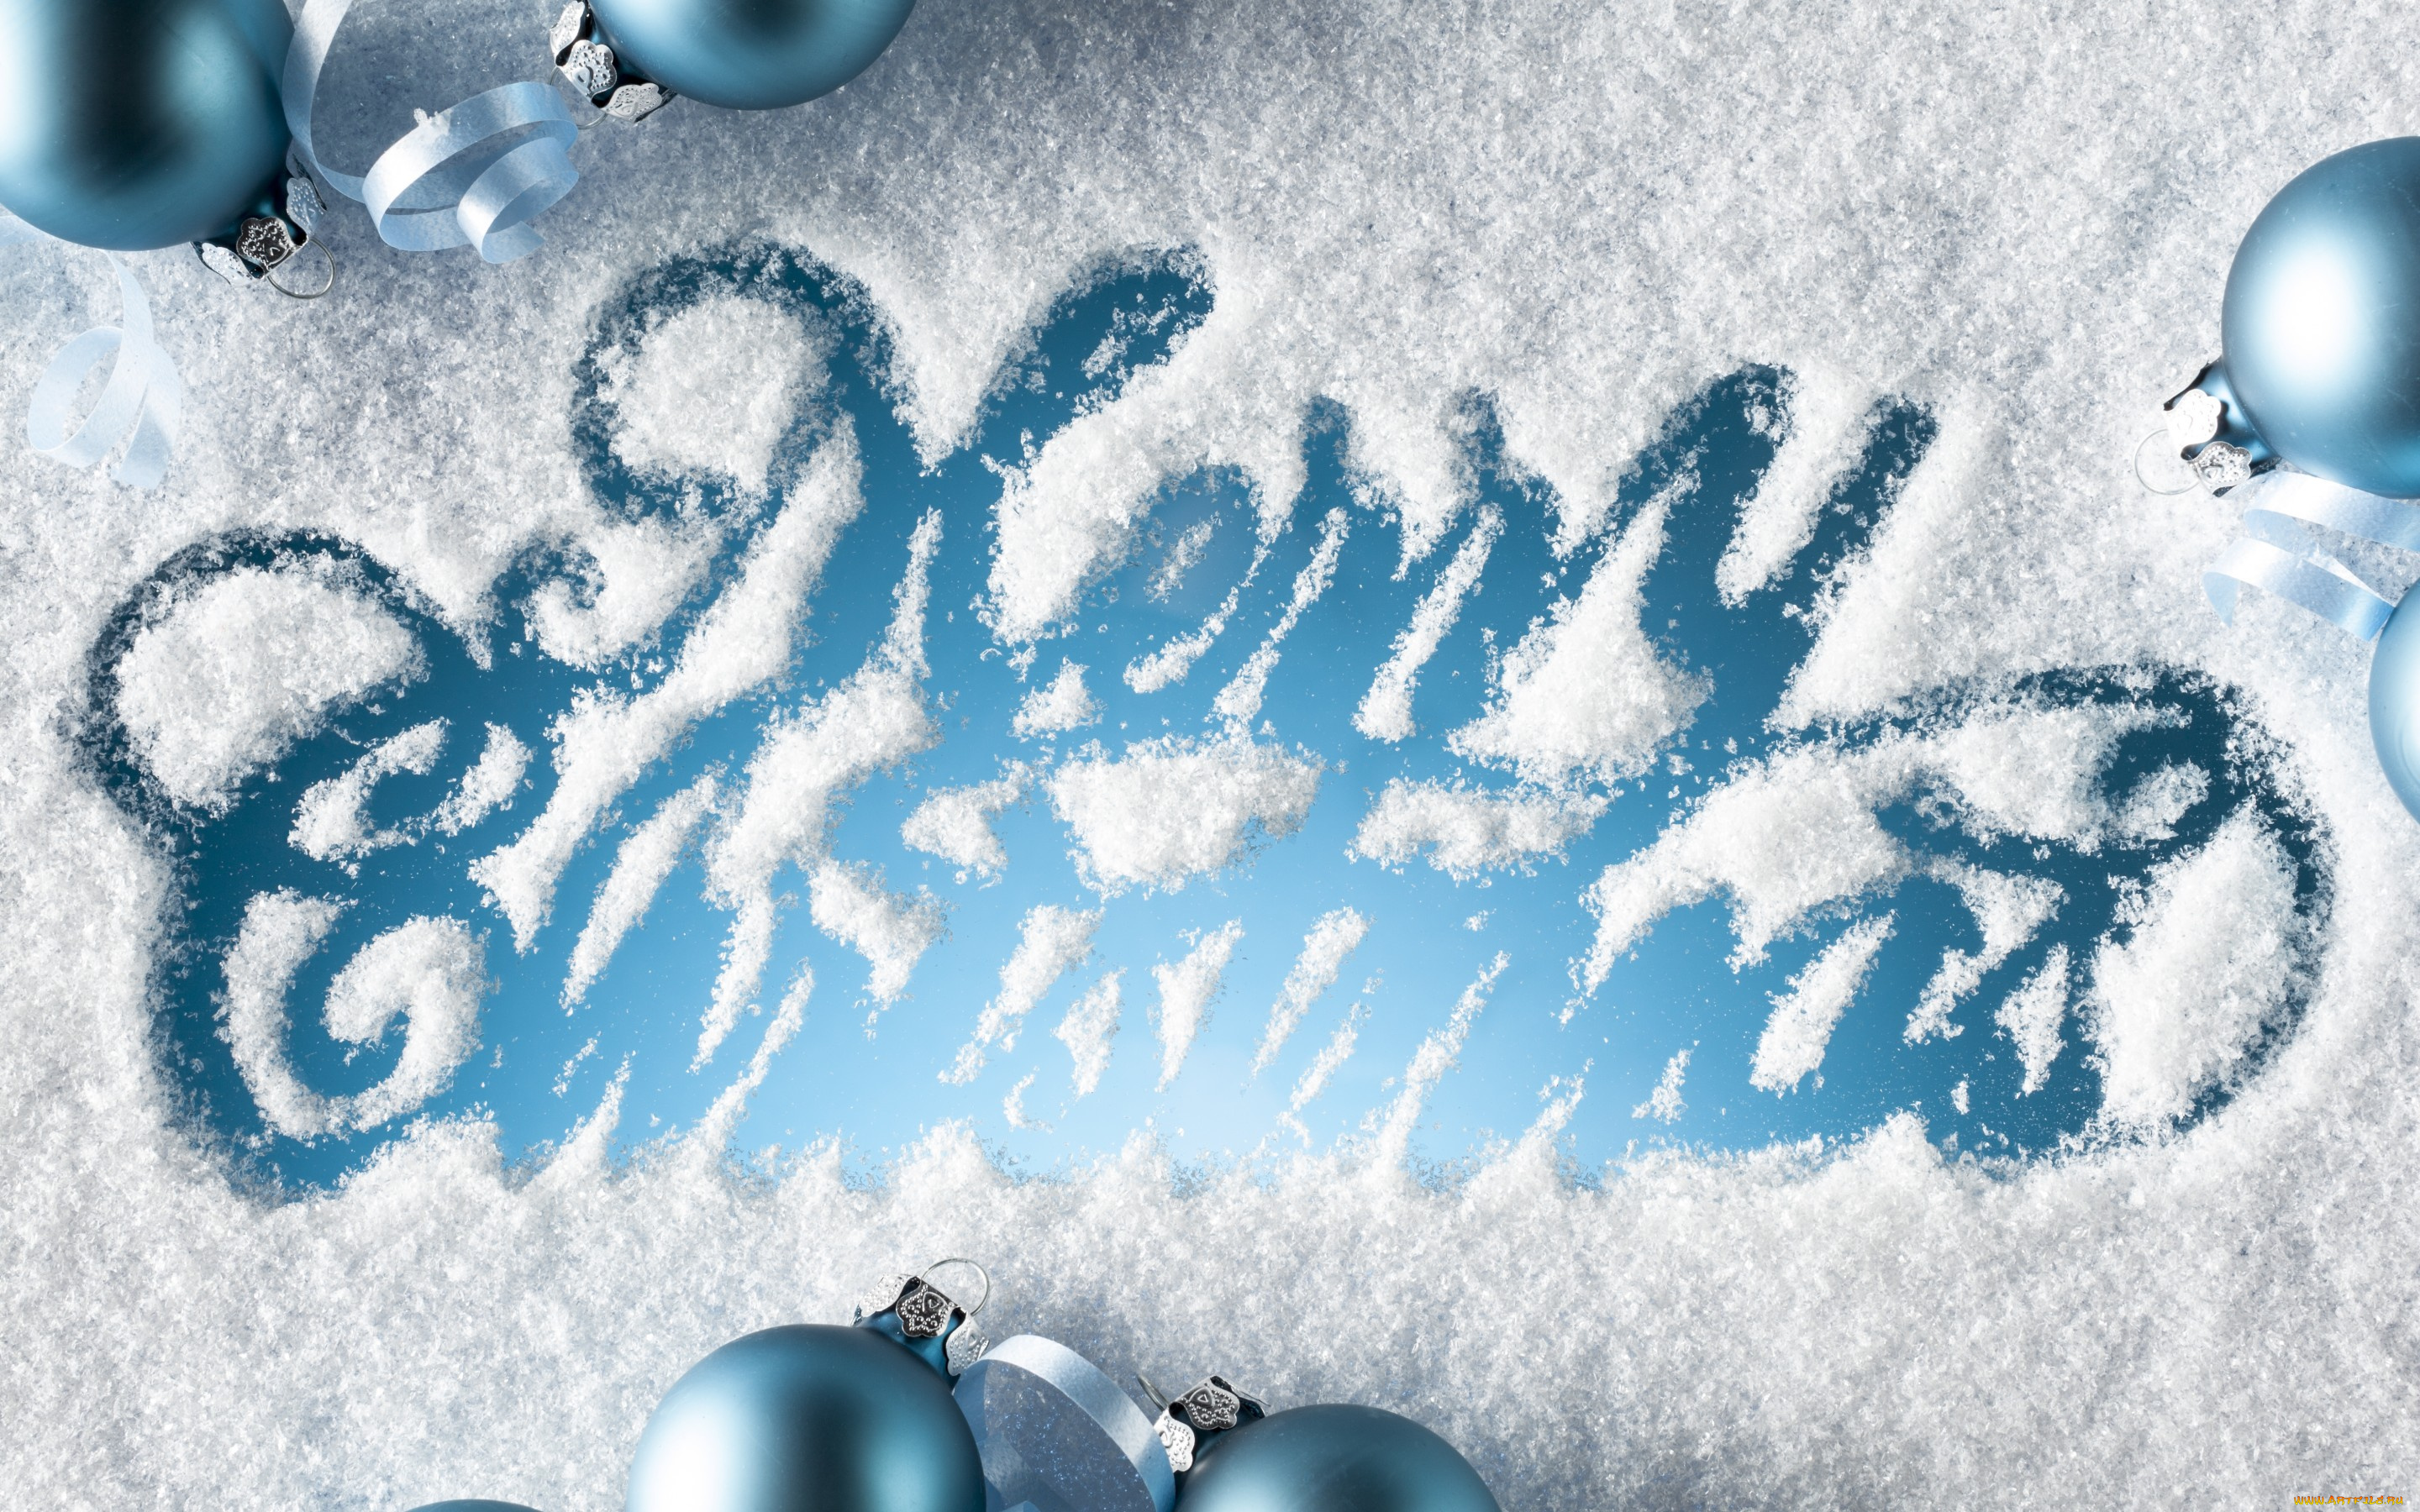 праздничные, -, разное, , новый, год, шары, снег, рождество, украшения, snow, merry, christmas, decoration, balls, новый, год, winter